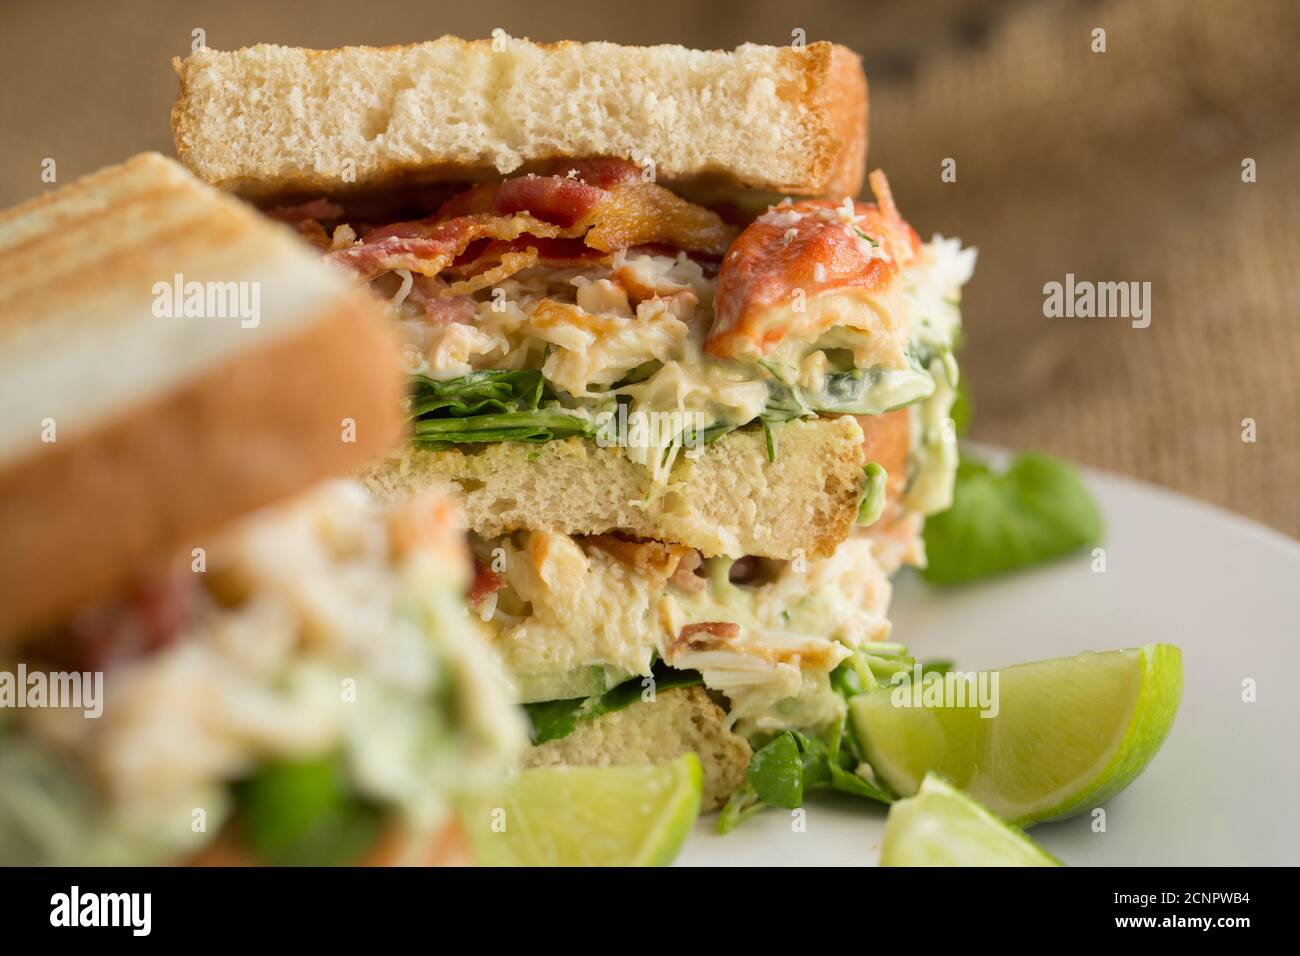 Ein Krabbenbrot auf geröstetem Brot aus einer braunen Krabbe, Krebs Pagurus, gekleidet mit Mayonnaise, Limette, Dill, Avocado, Salat und knusprig geräuchertem Speck. Stockfoto